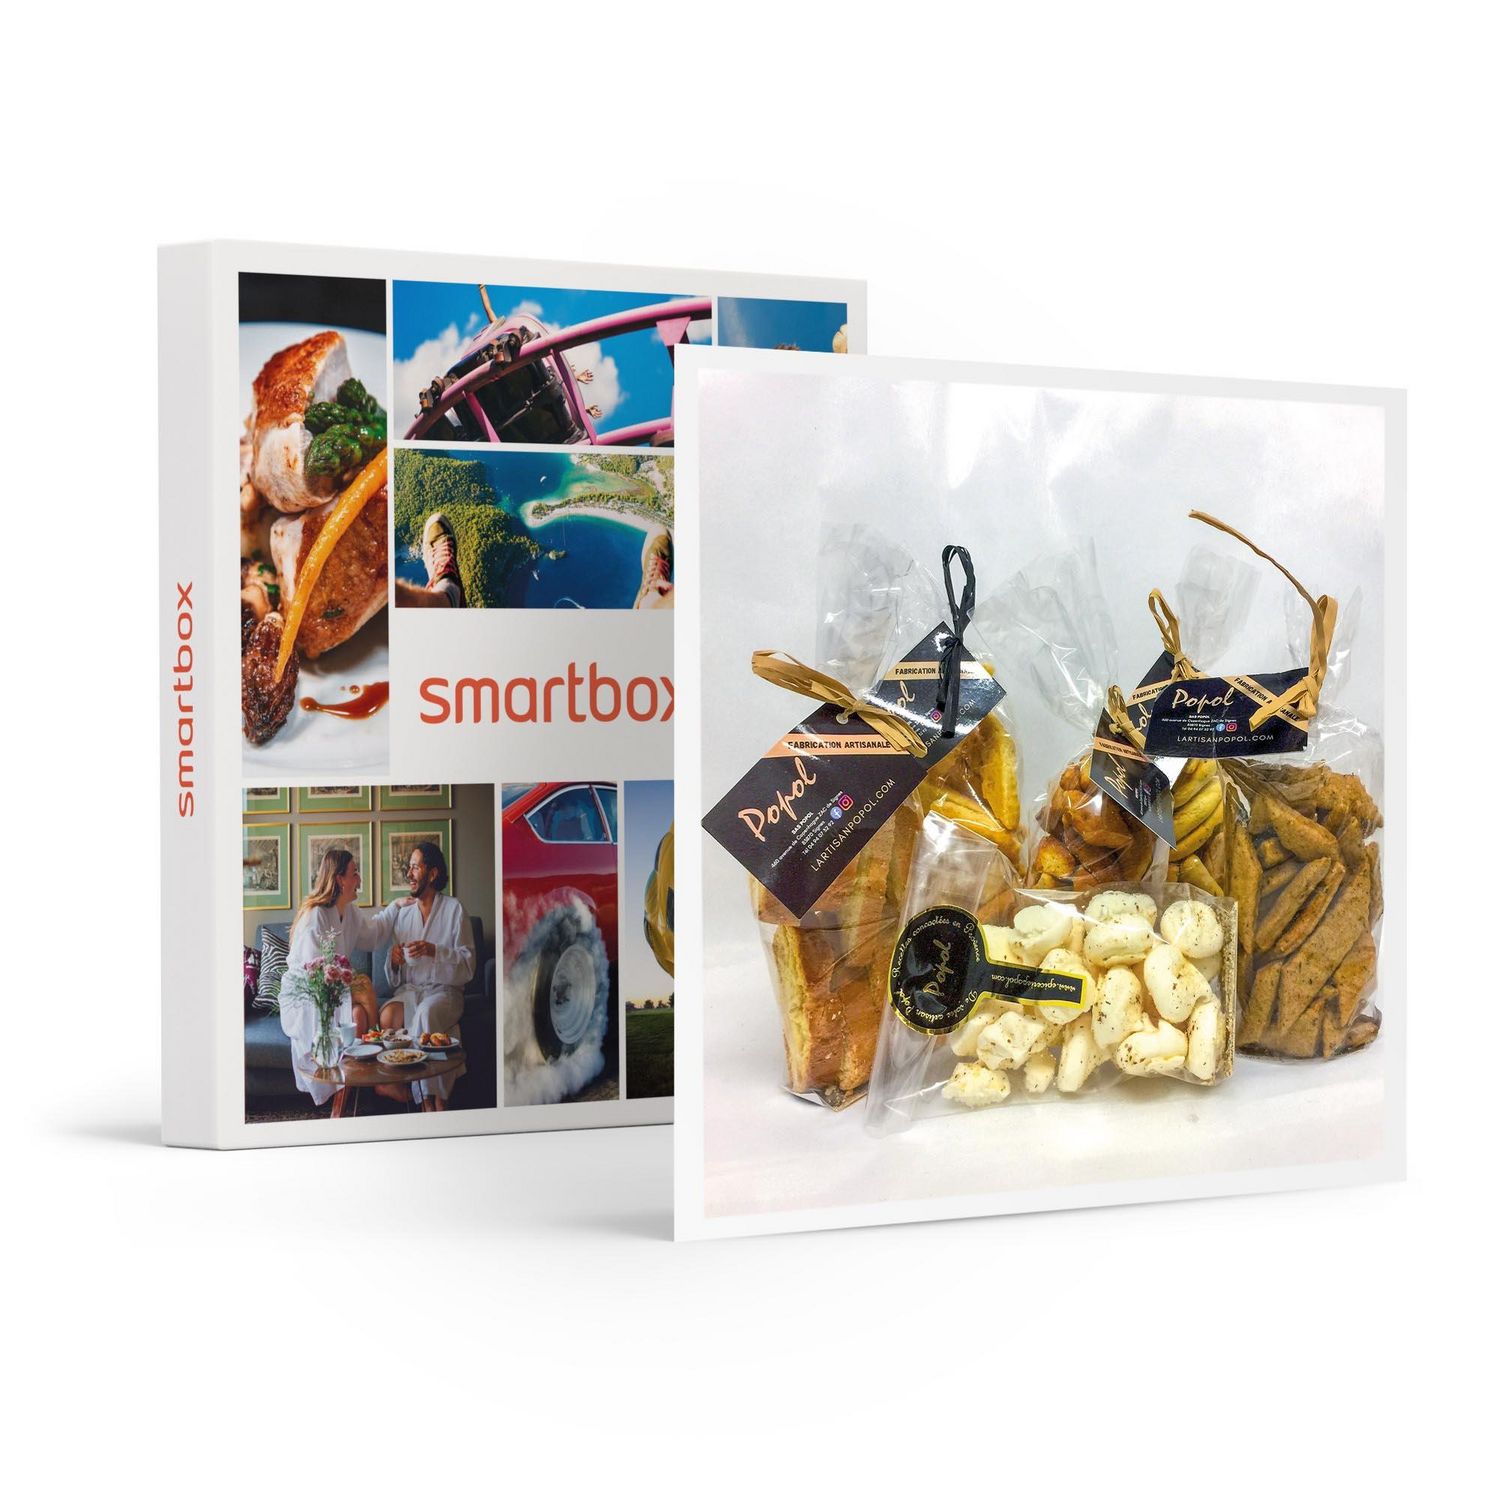 Smartbox Coffret Cadeau - Panier gourmand de spécialités à la